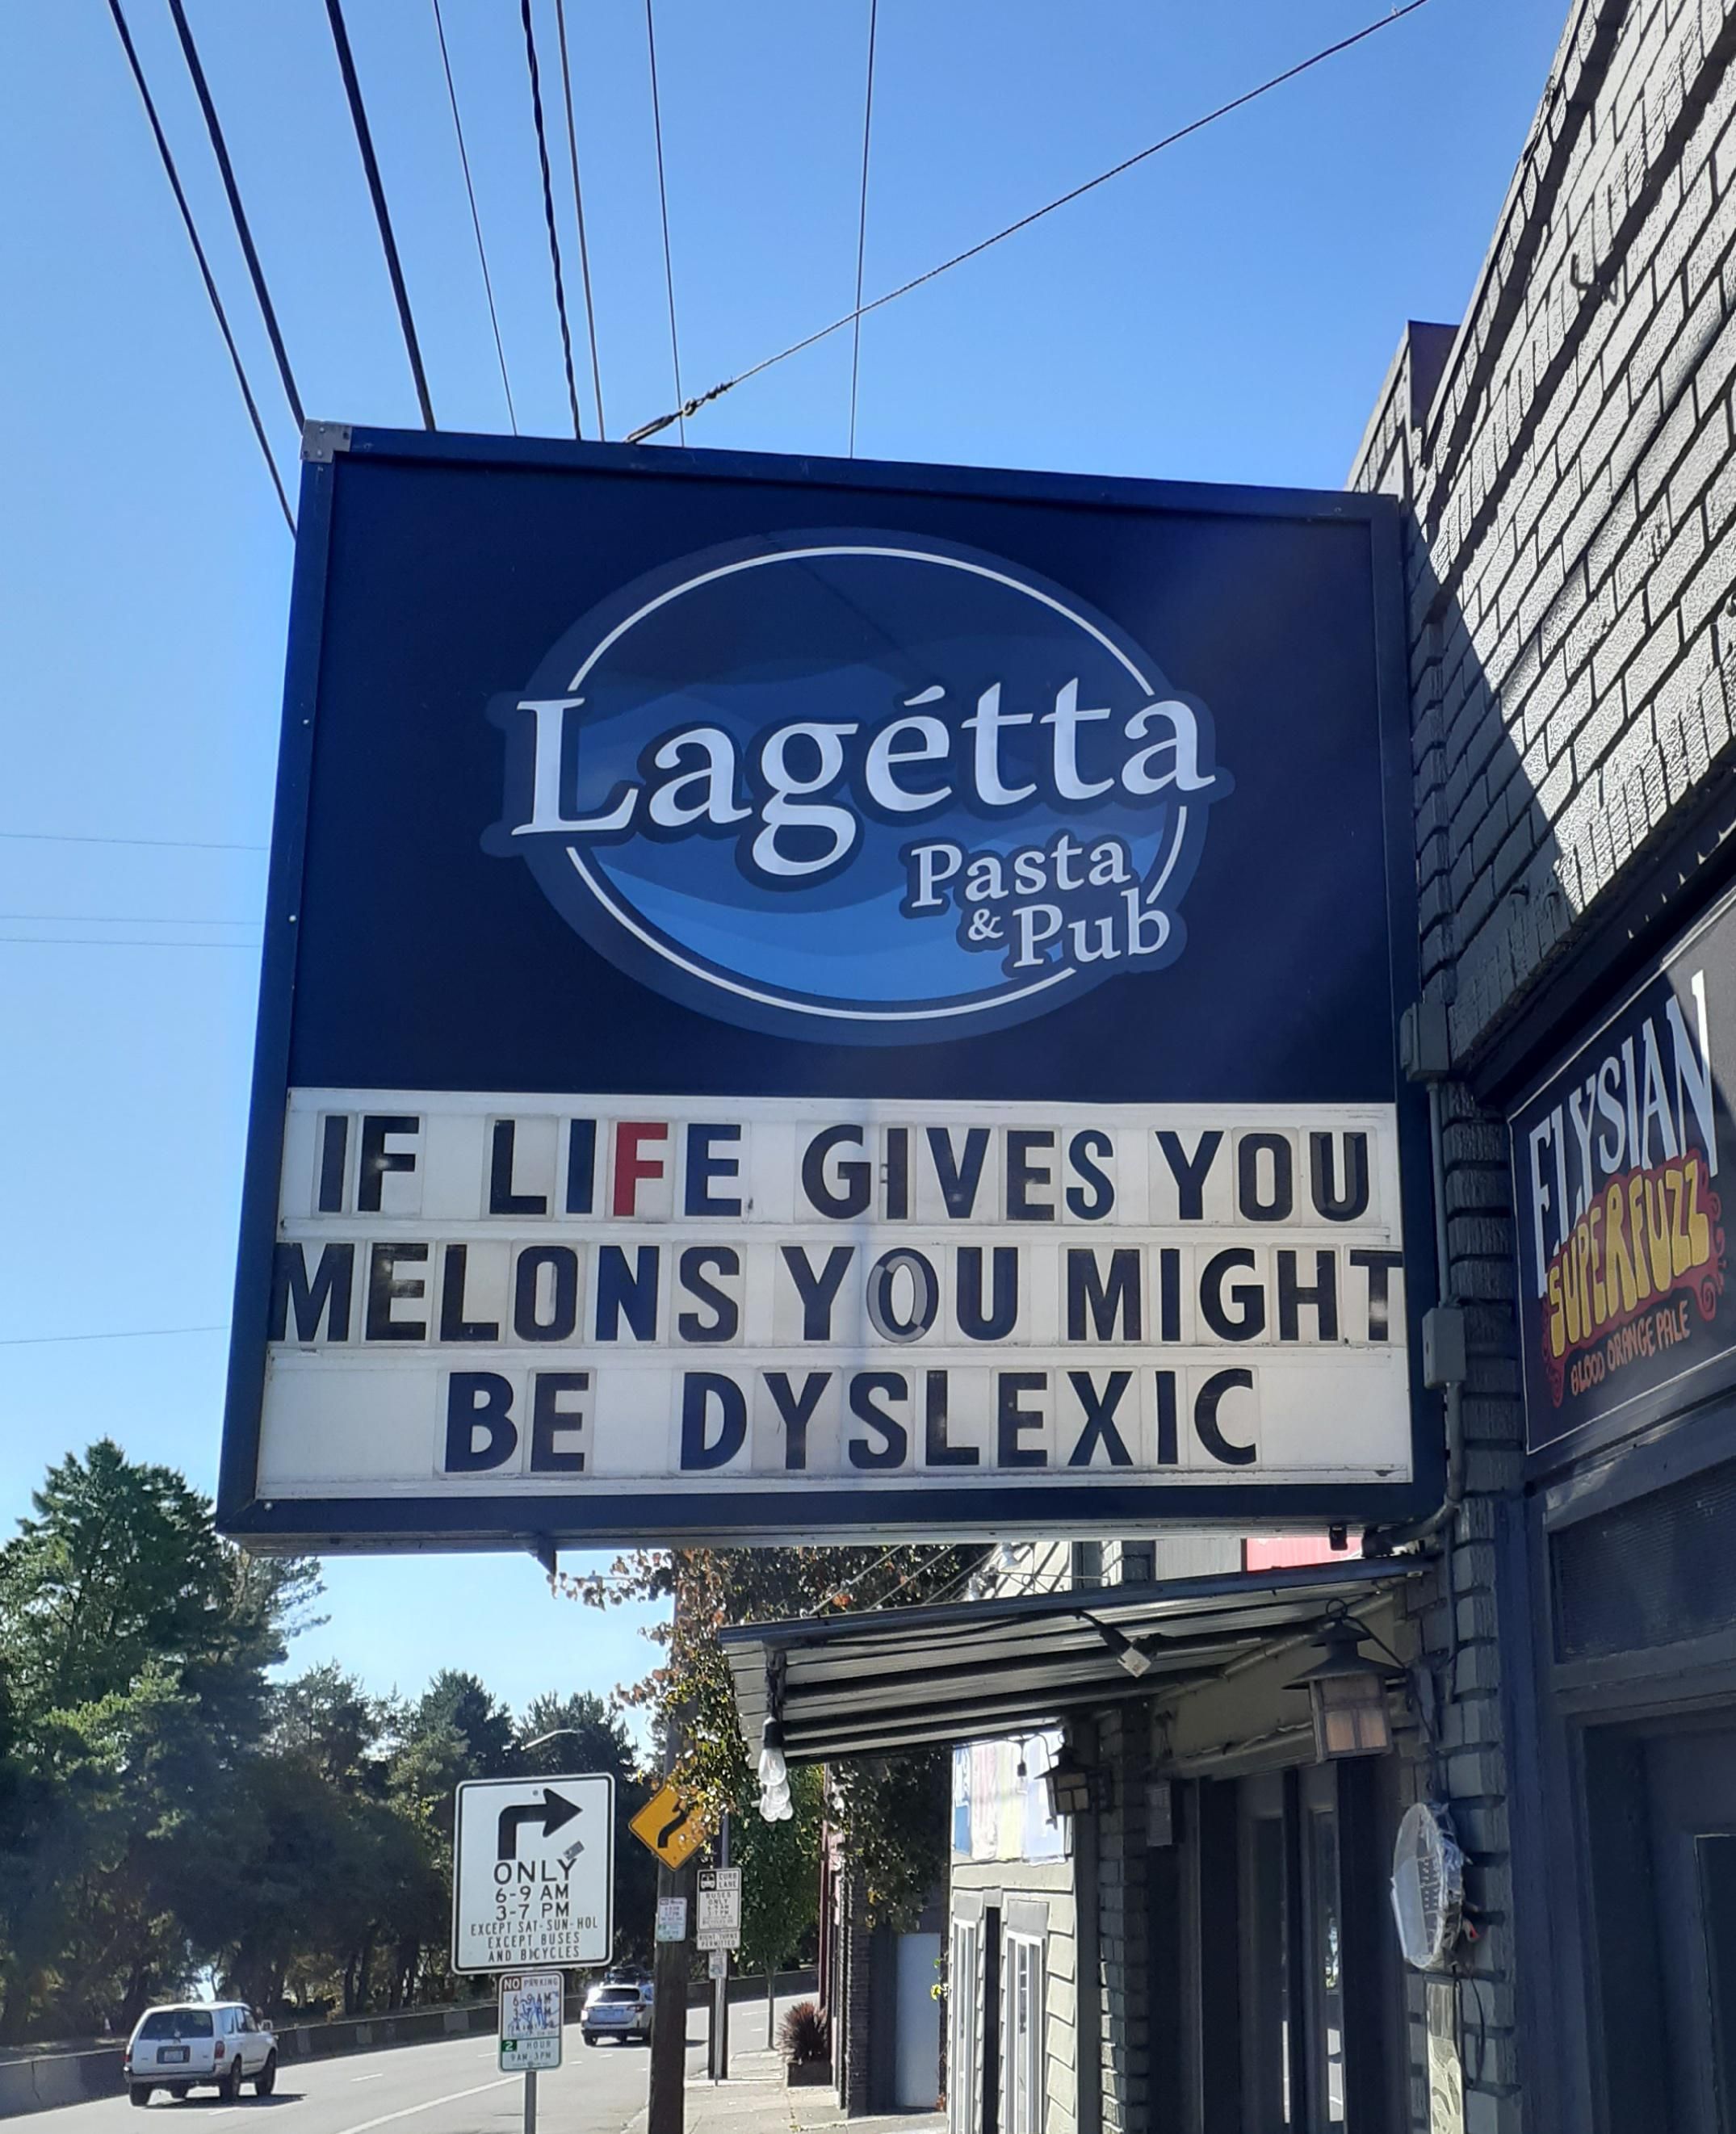 Or make melon-ade.